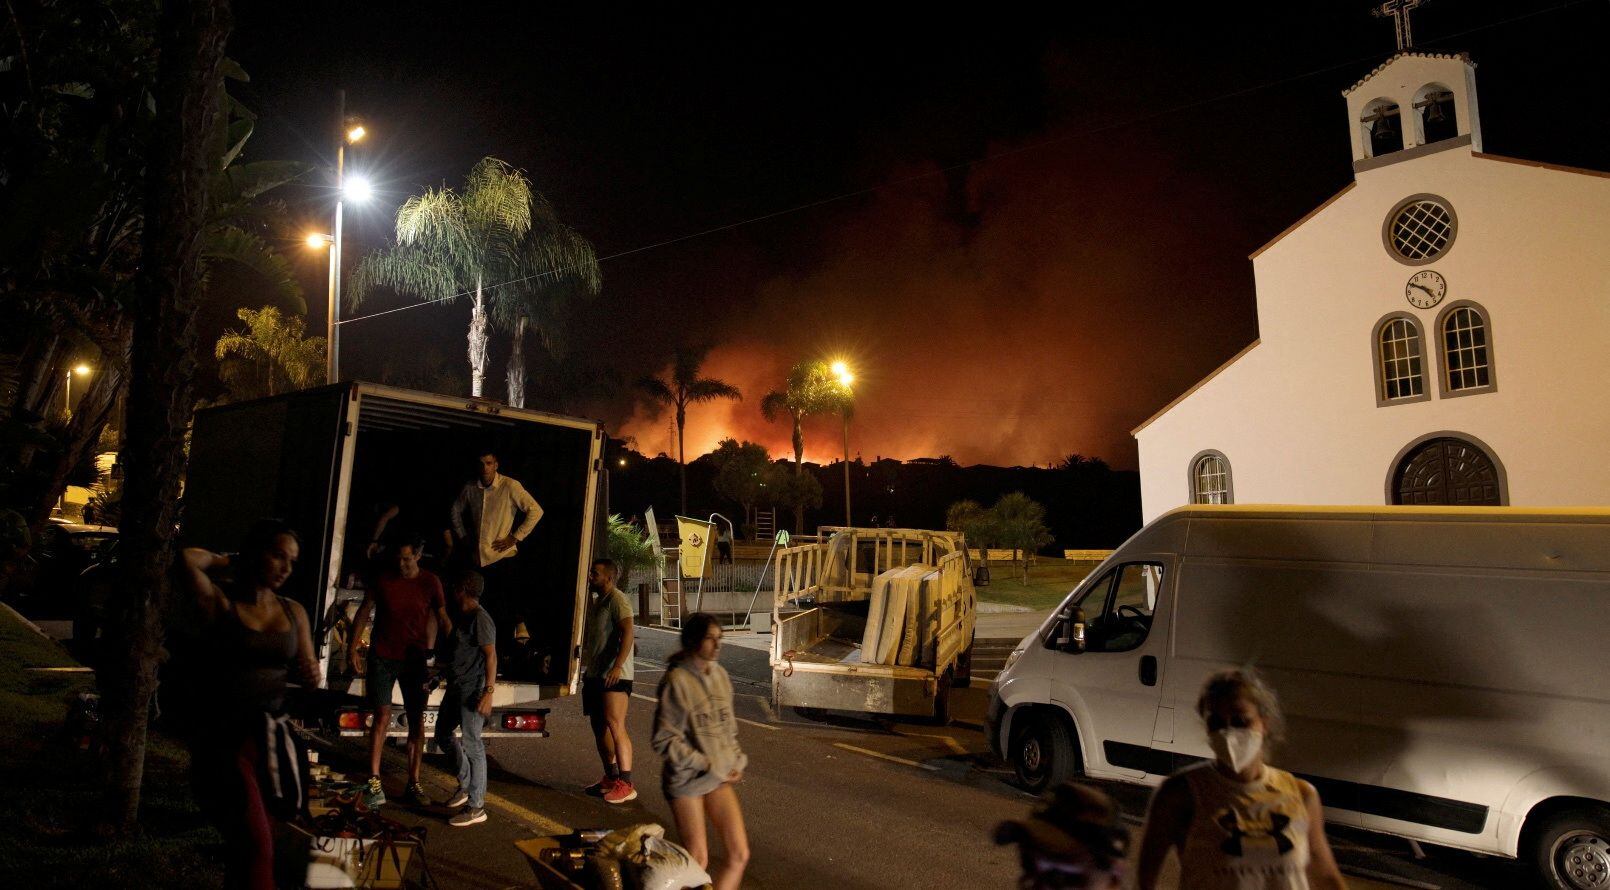 Vecinos siendo evacuados por el incendio en Tenerife. Vini Soares/via REUTERS